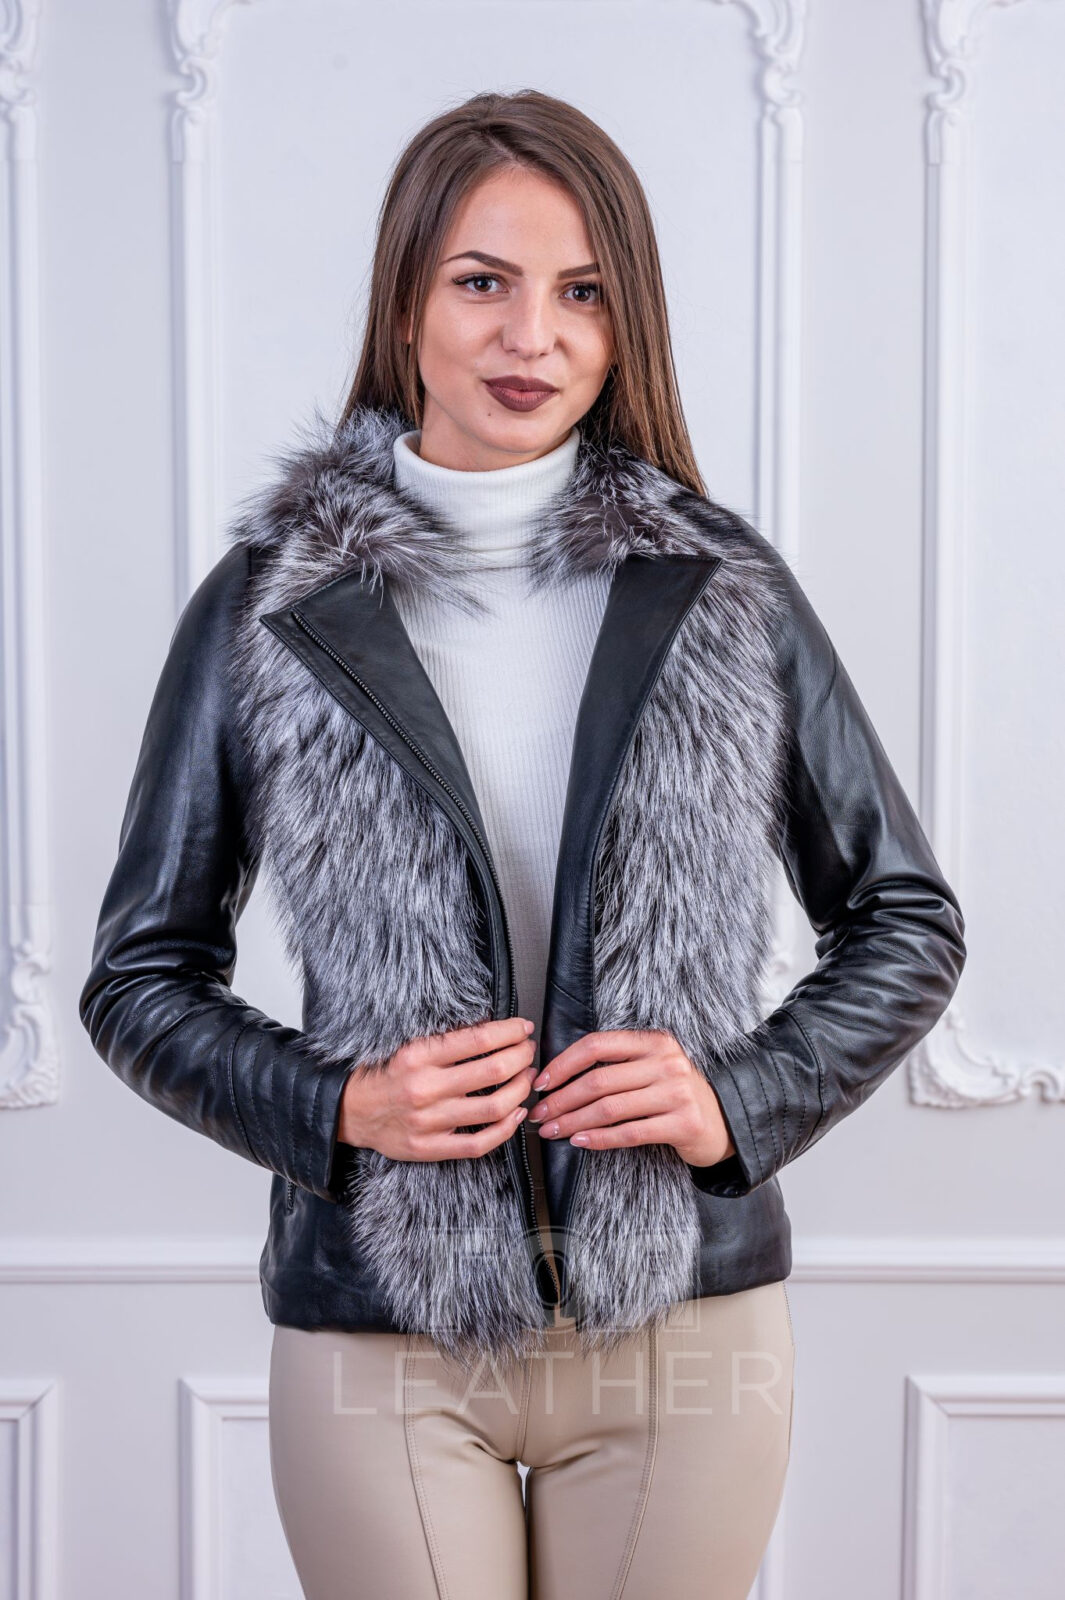 Дамско кожено яке с лисица Silver fox от ГОЯ Leather. Вталено дамско яке от качествена агнешка напа с гарнитура от натурална сребърна лисица.